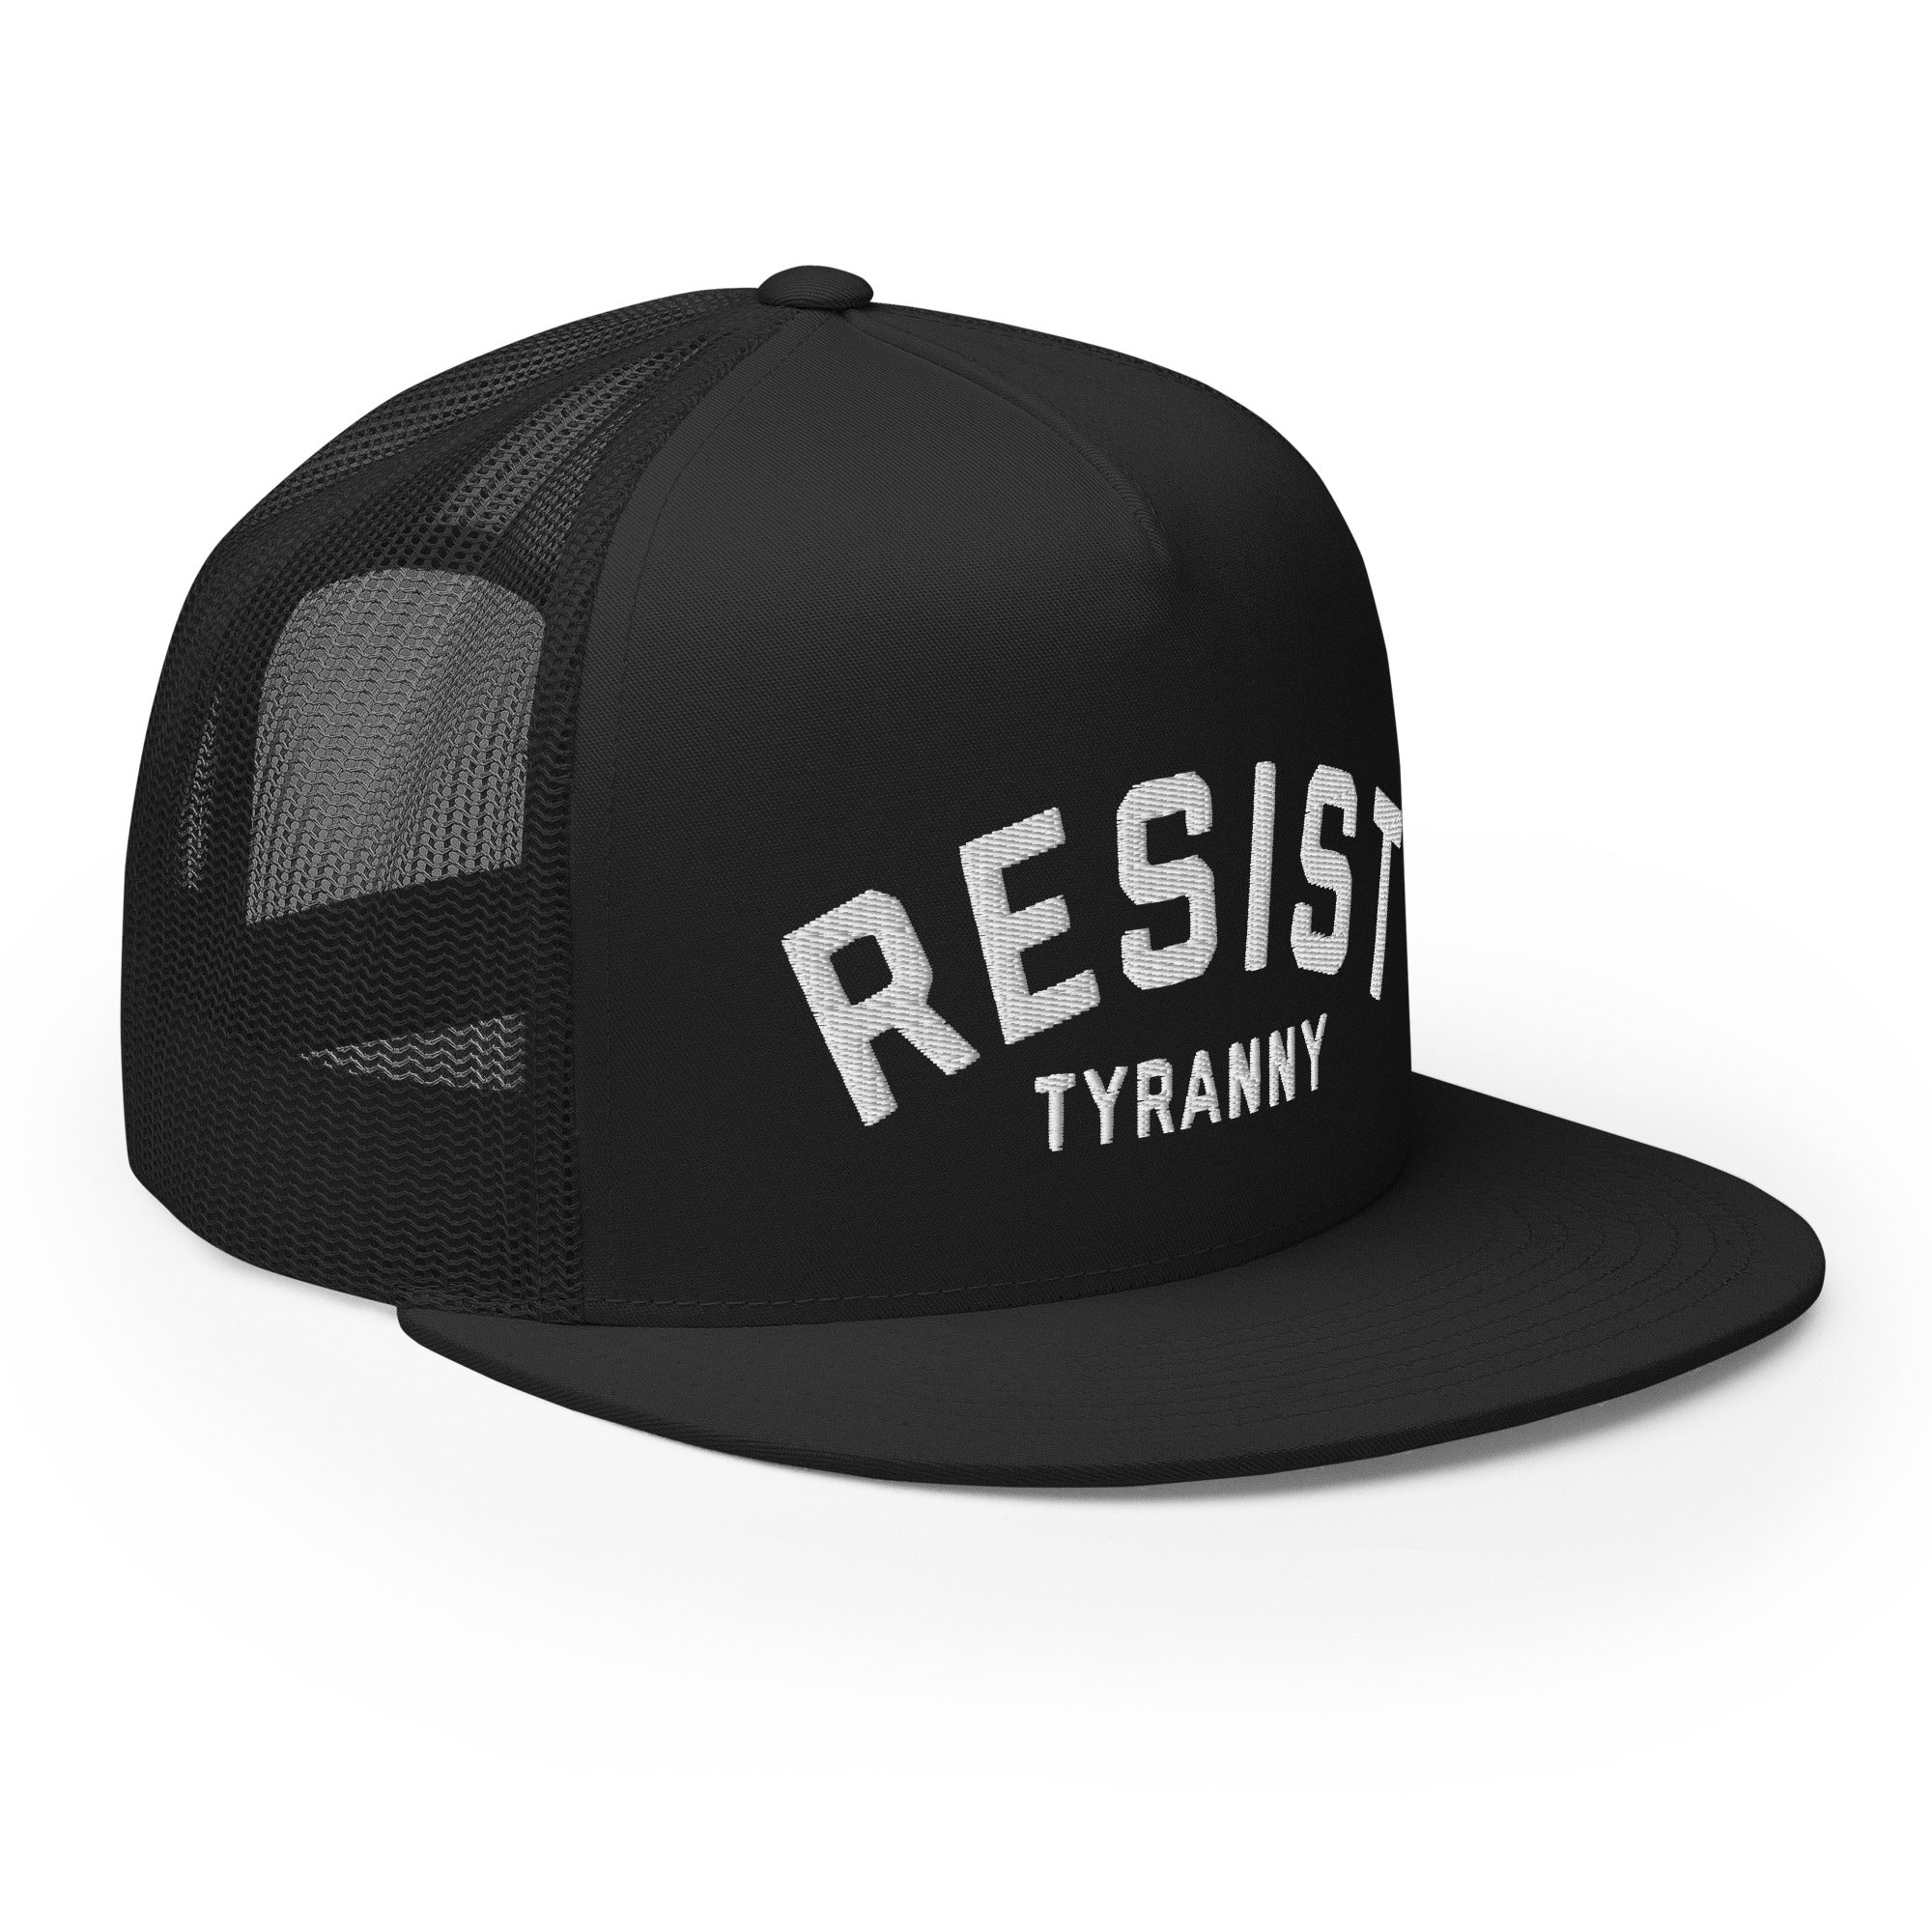 Resist Tyranny - Flat Bill Trucker Hat